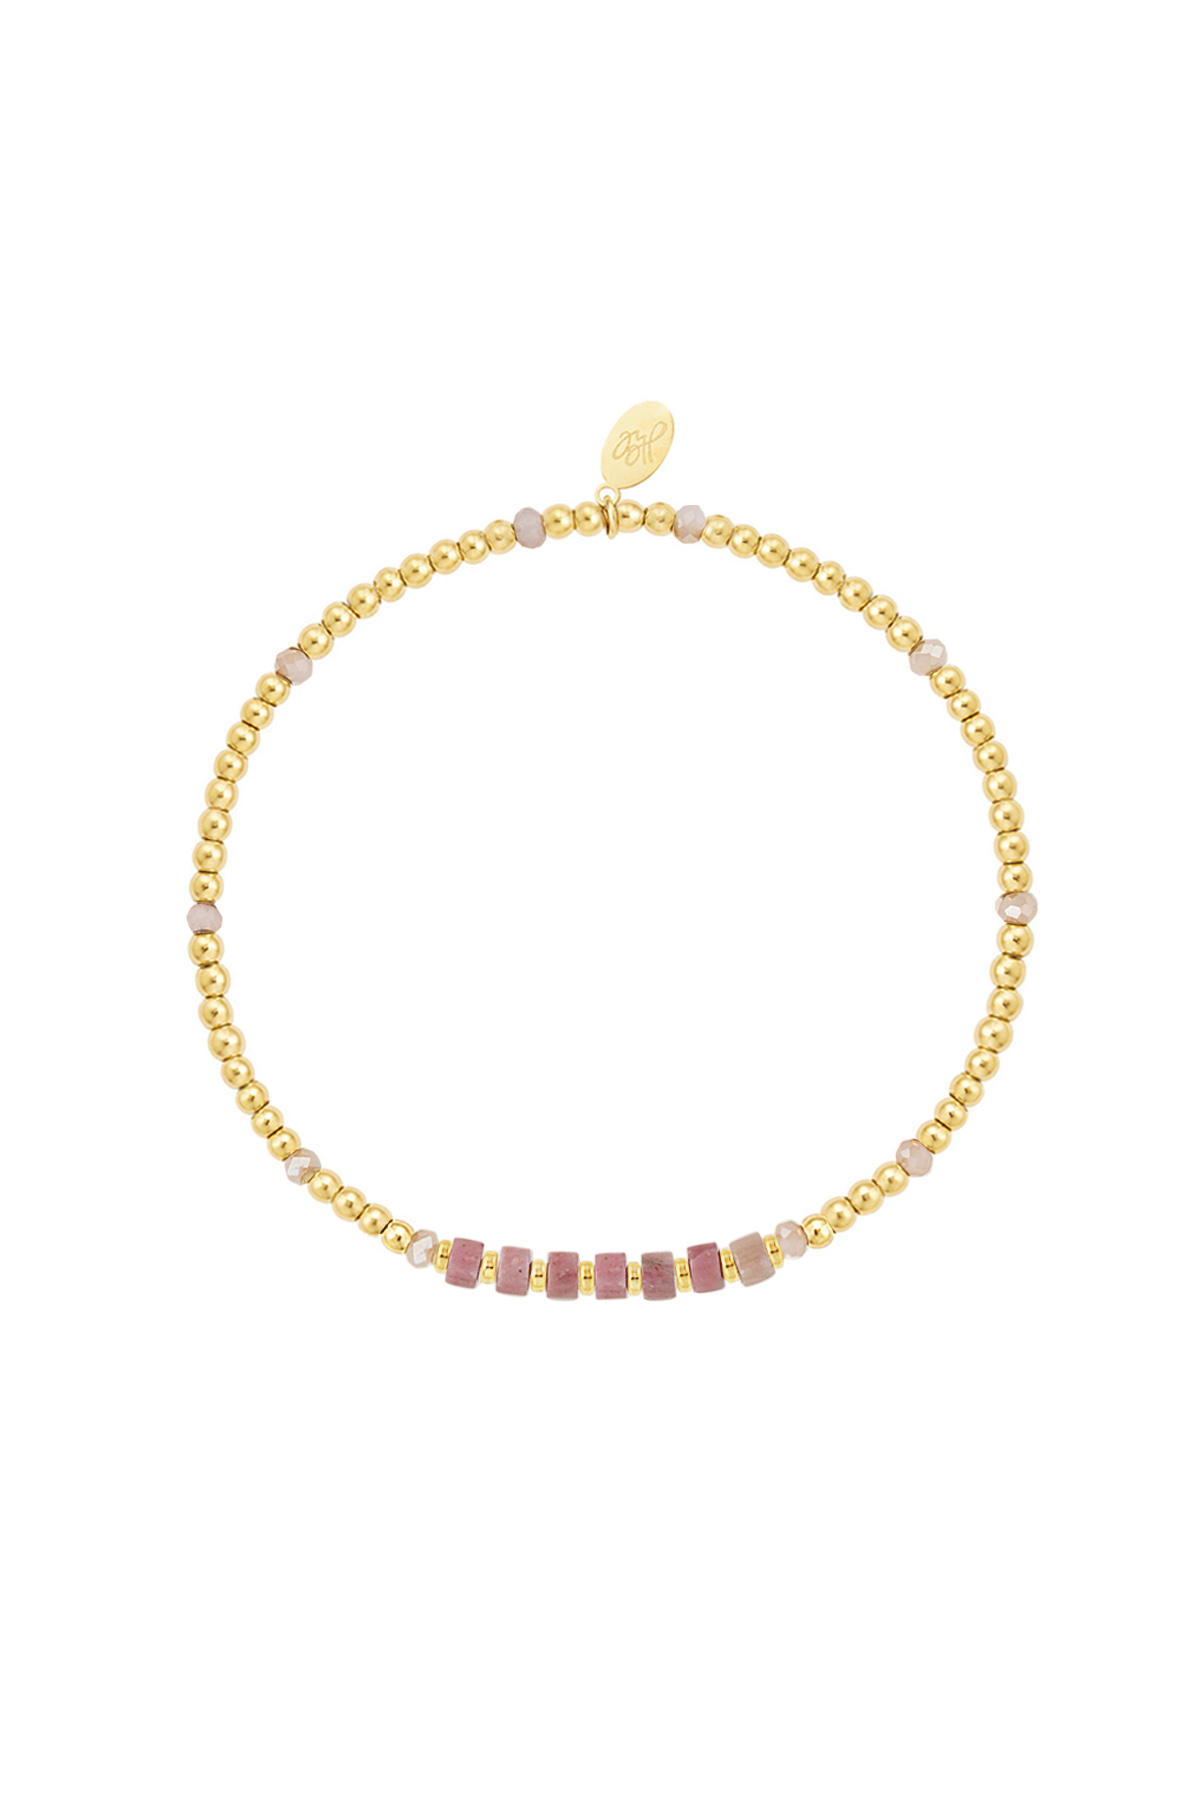 Armband verschiedene Perlen - gold/rosa Edelstahl